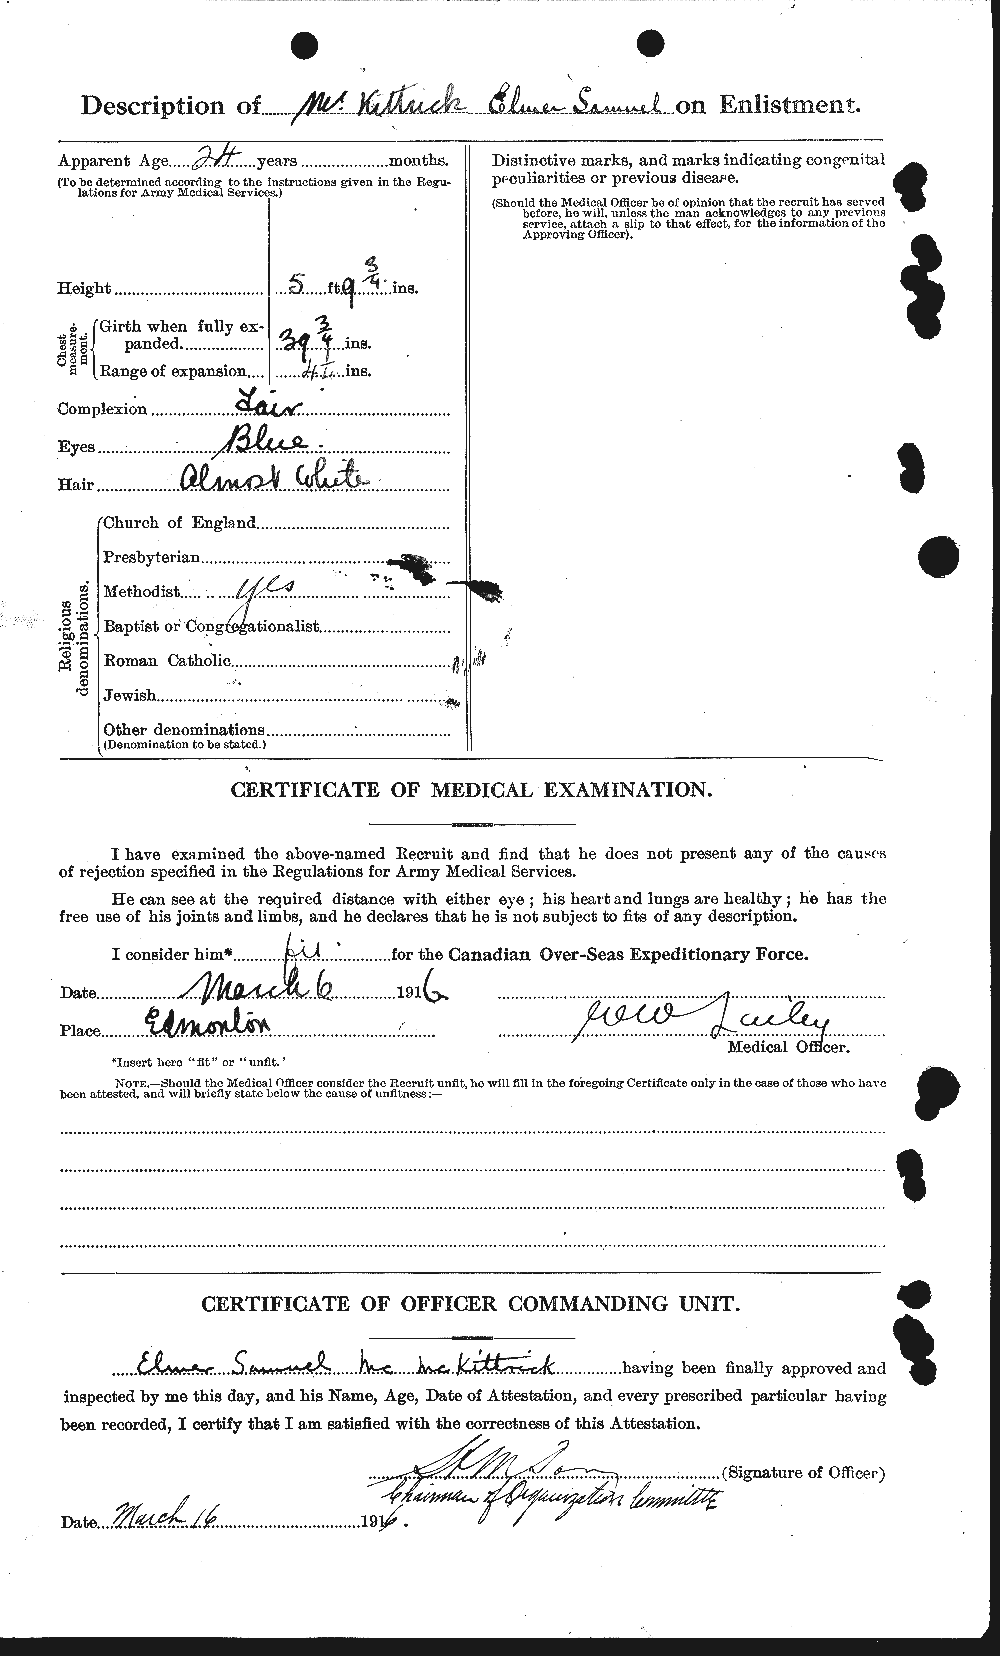 Dossiers du Personnel de la Première Guerre mondiale - CEC 530669b